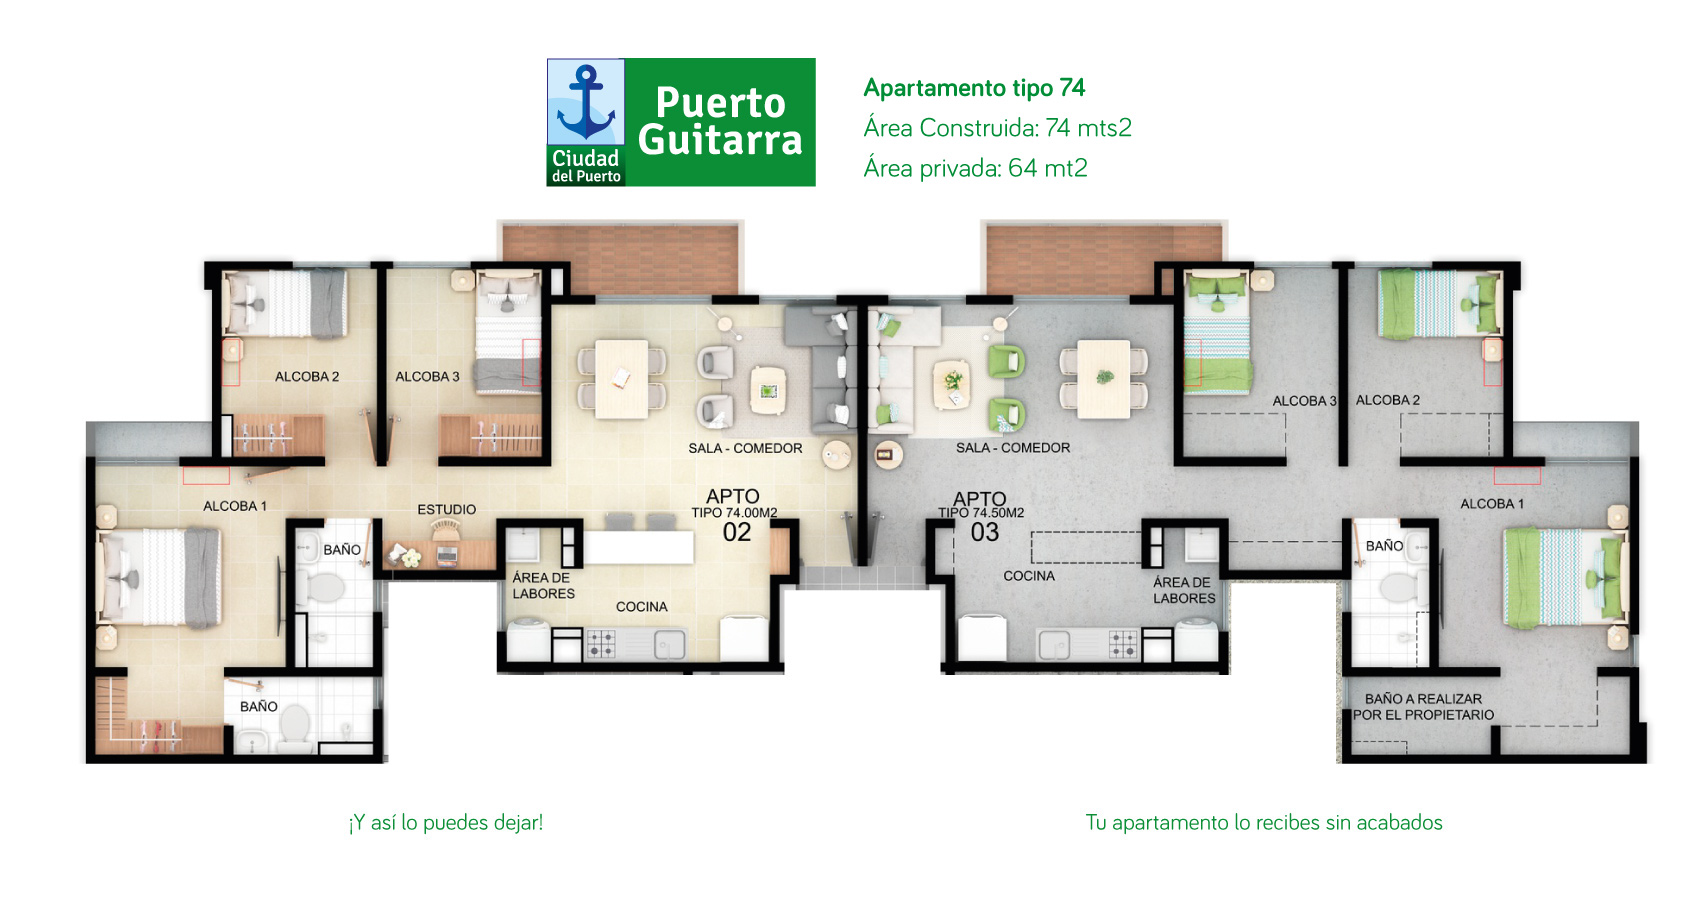 Puerto Guitarra, proyecto de apartamentos en Soledad - Atlántico, subsidio de vivienda.